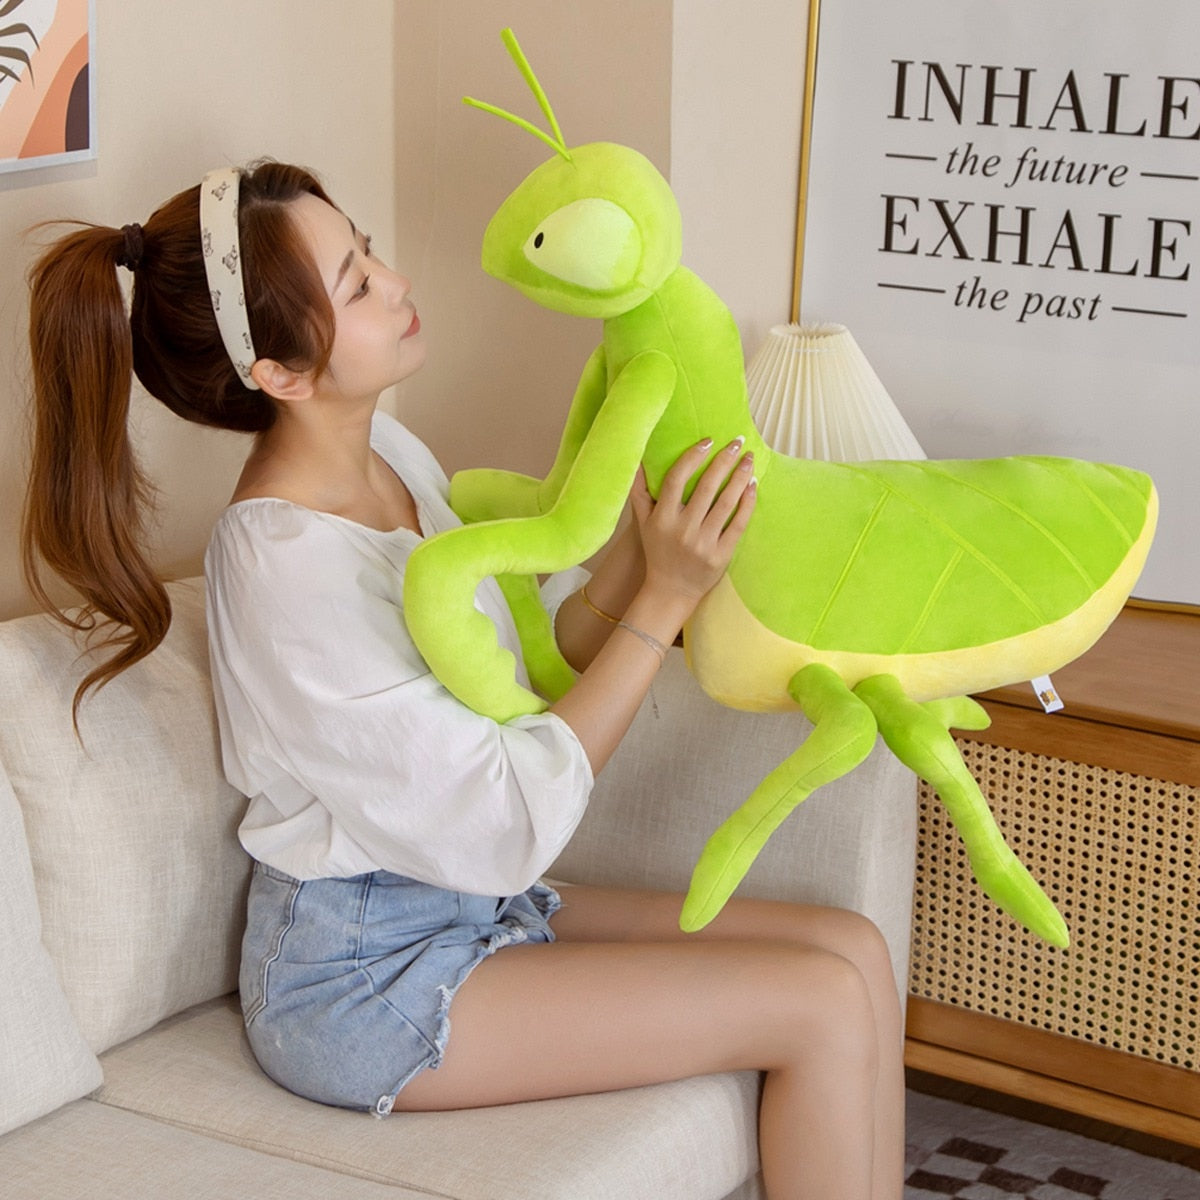 Kawaii Green Praying Mantis Plush Toy Simulation Stuffed Animal